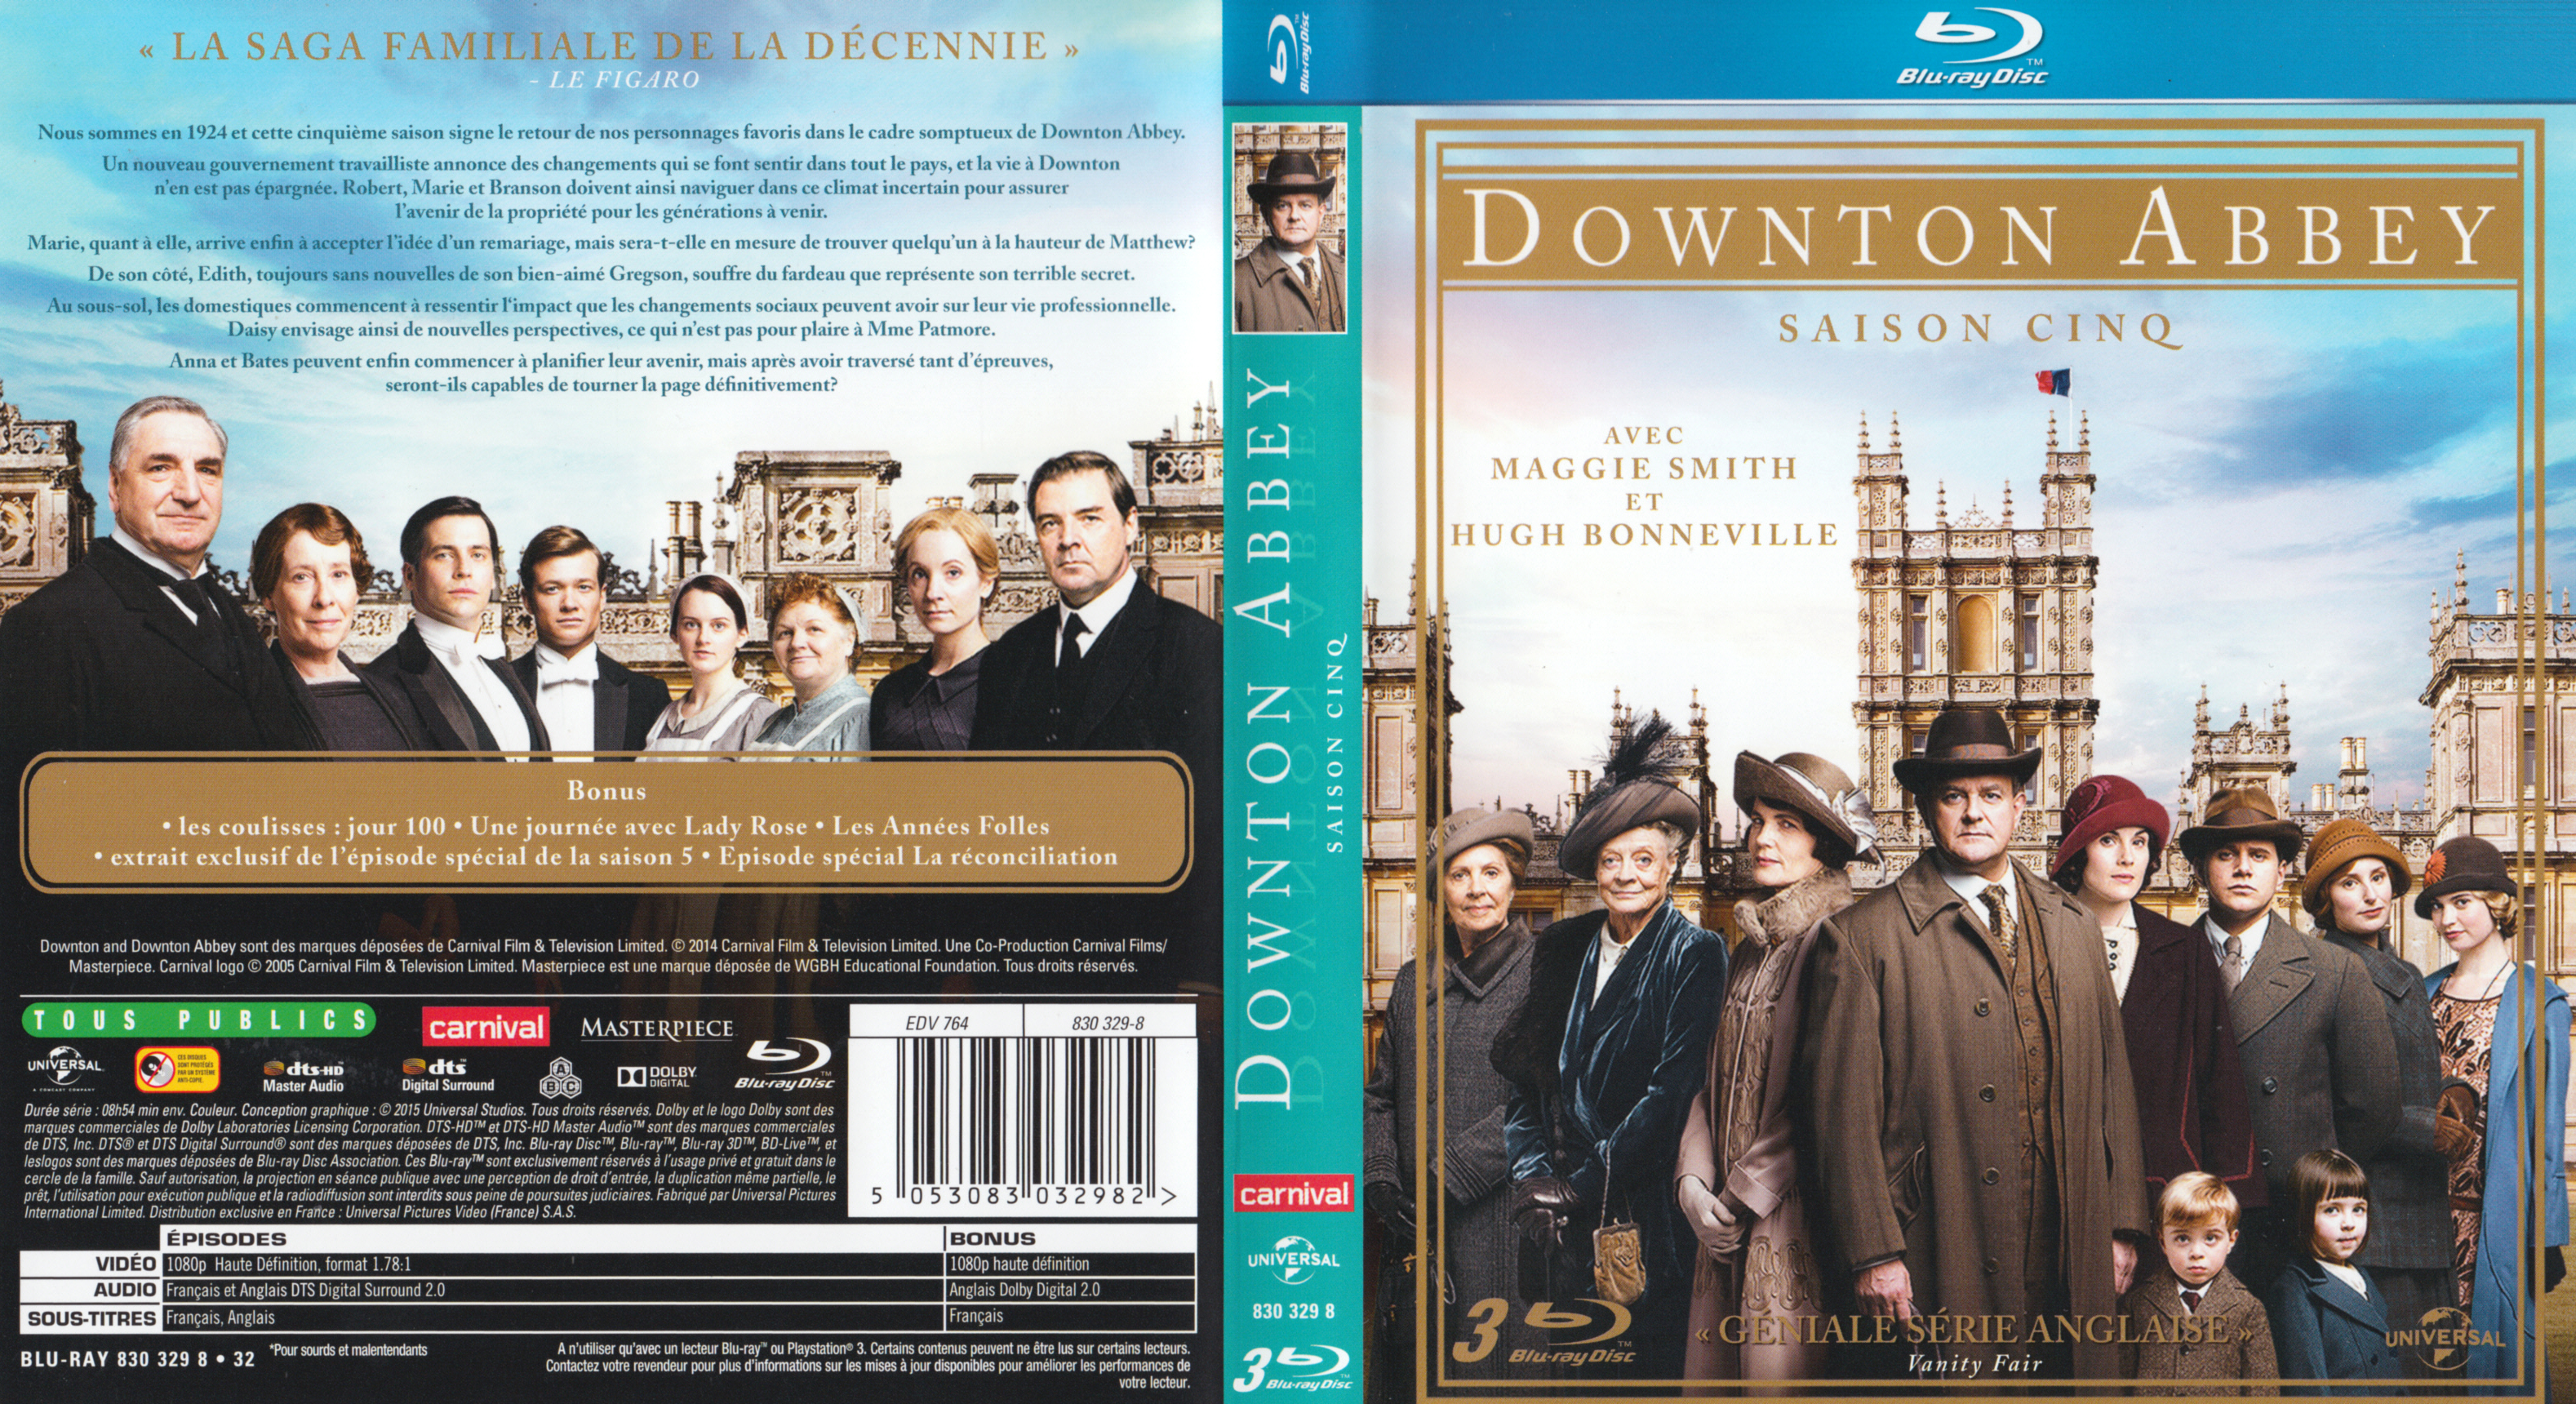 Jaquette DVD Downton Abbey Saison 5 (BLU-RAY)